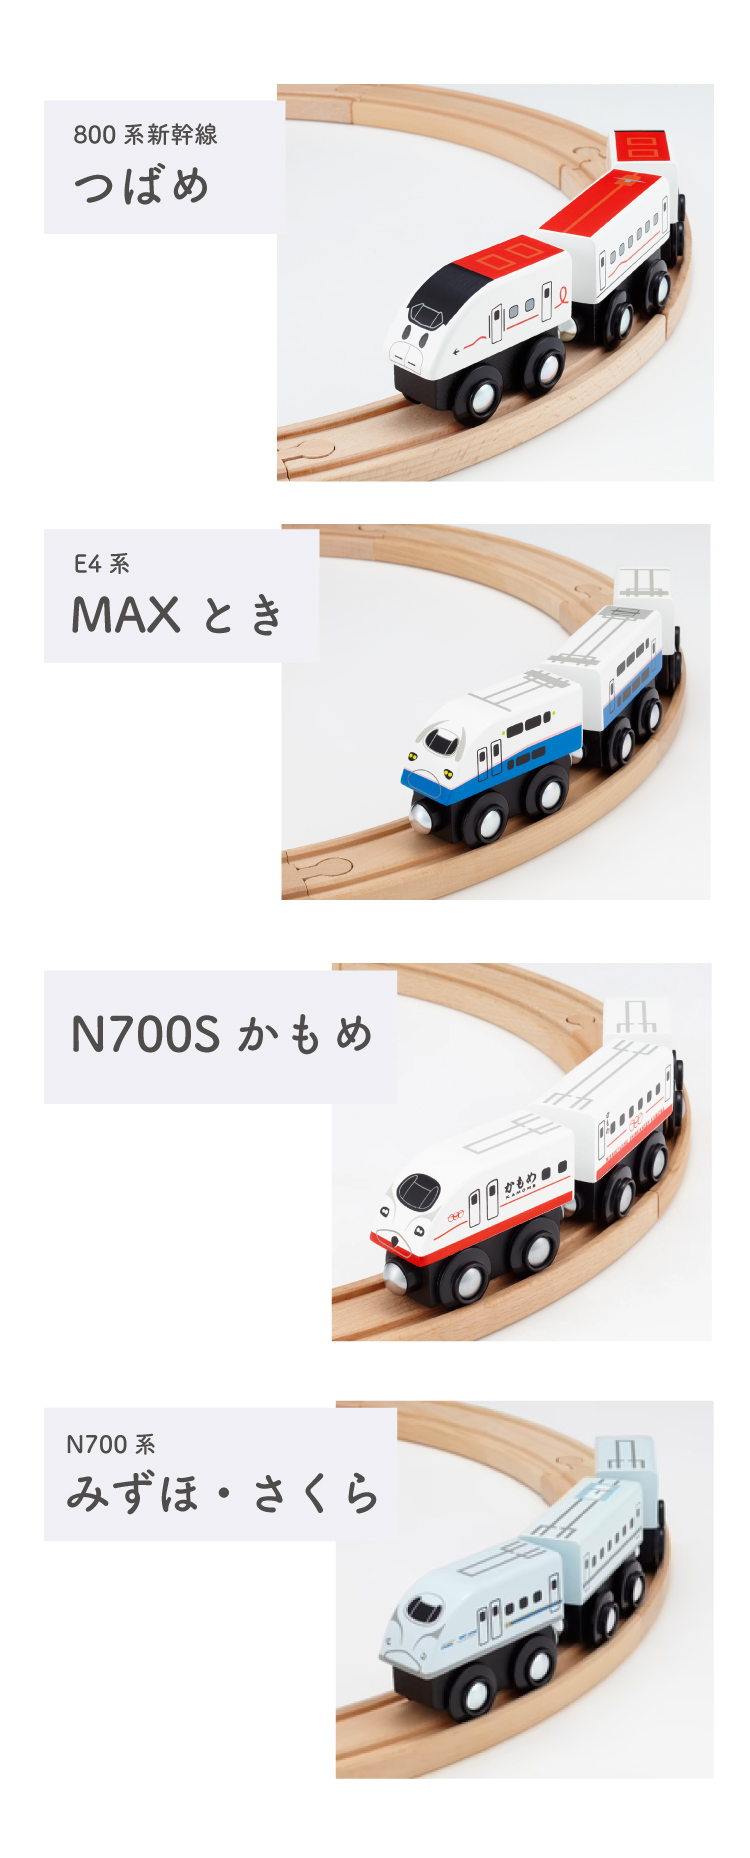 新幹線 電車 おもちゃ 木のおもちゃ 鉄道 moku TRAIN E5 はやぶさ E6 こまち E7 かがやき N700S ドクターイエロー 0系 900系 つばめ E4系 MAXとき